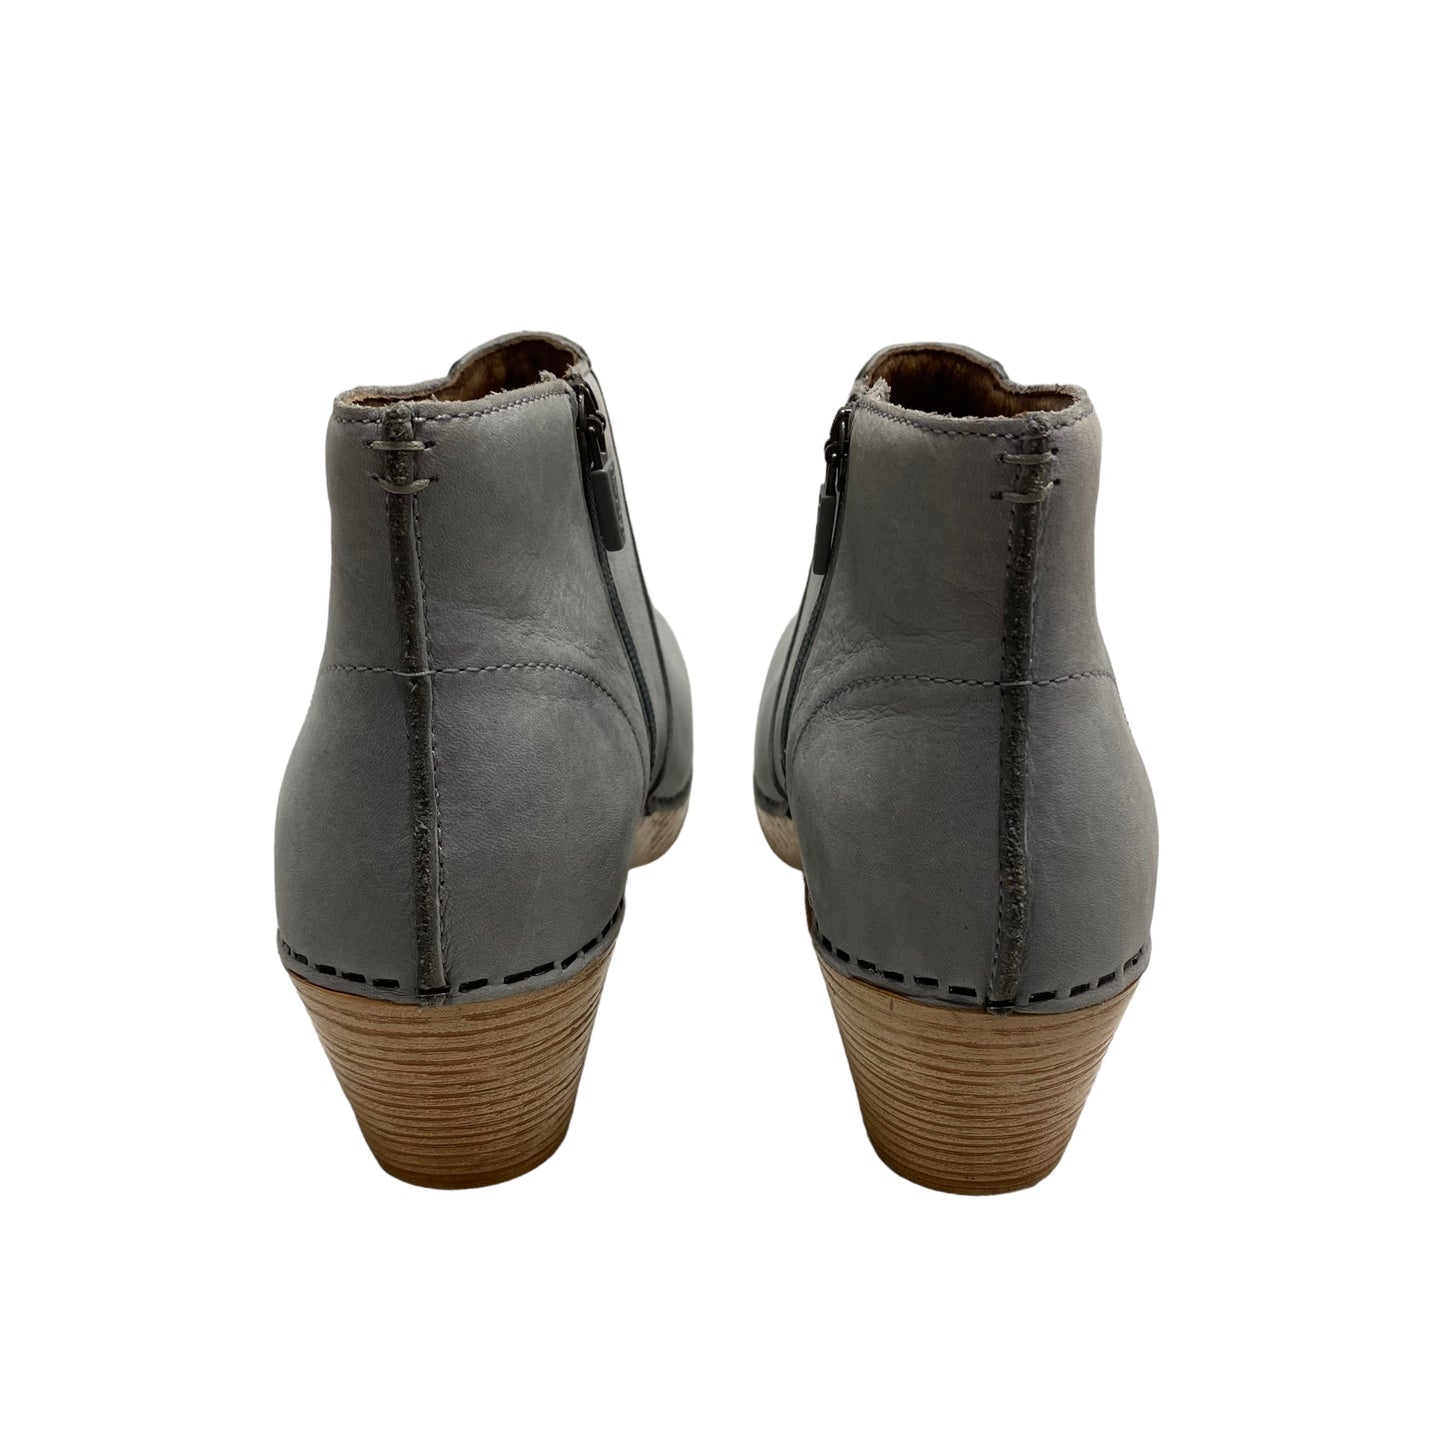 Boots Ankle Heels By Dansko  Size: 5.5